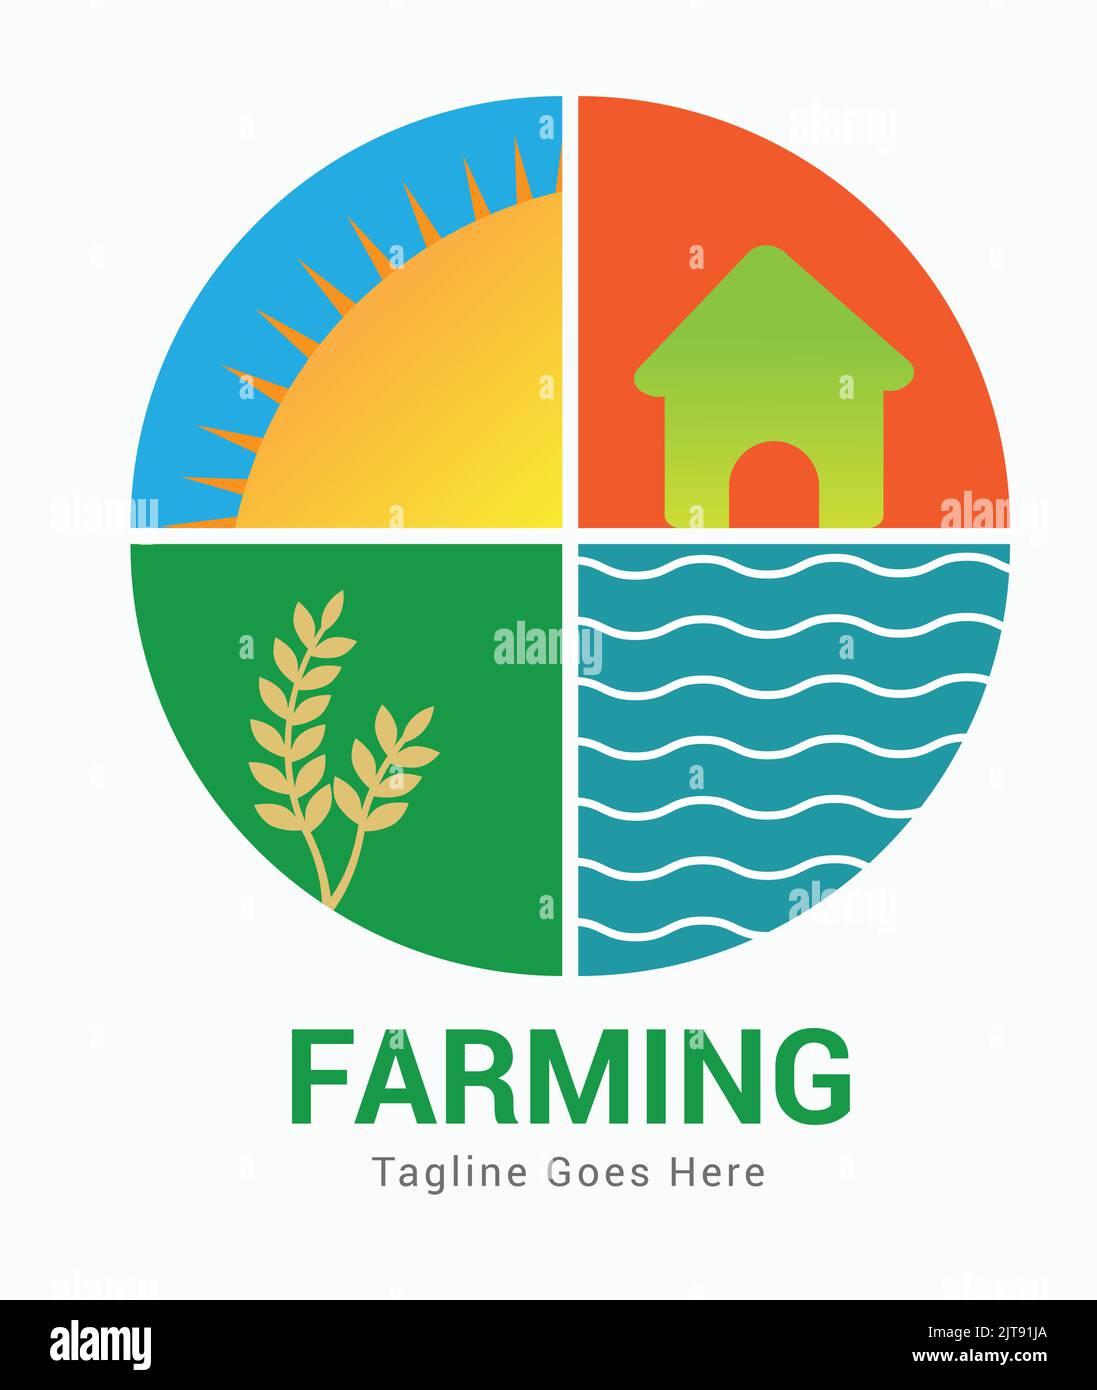 Landwirtschaft Landwirtschaft Öko Natur Logo Vektor mit Sonnenblatt Home Wellen Bauernhaus Logo Vektor Illustration Stock Vektor